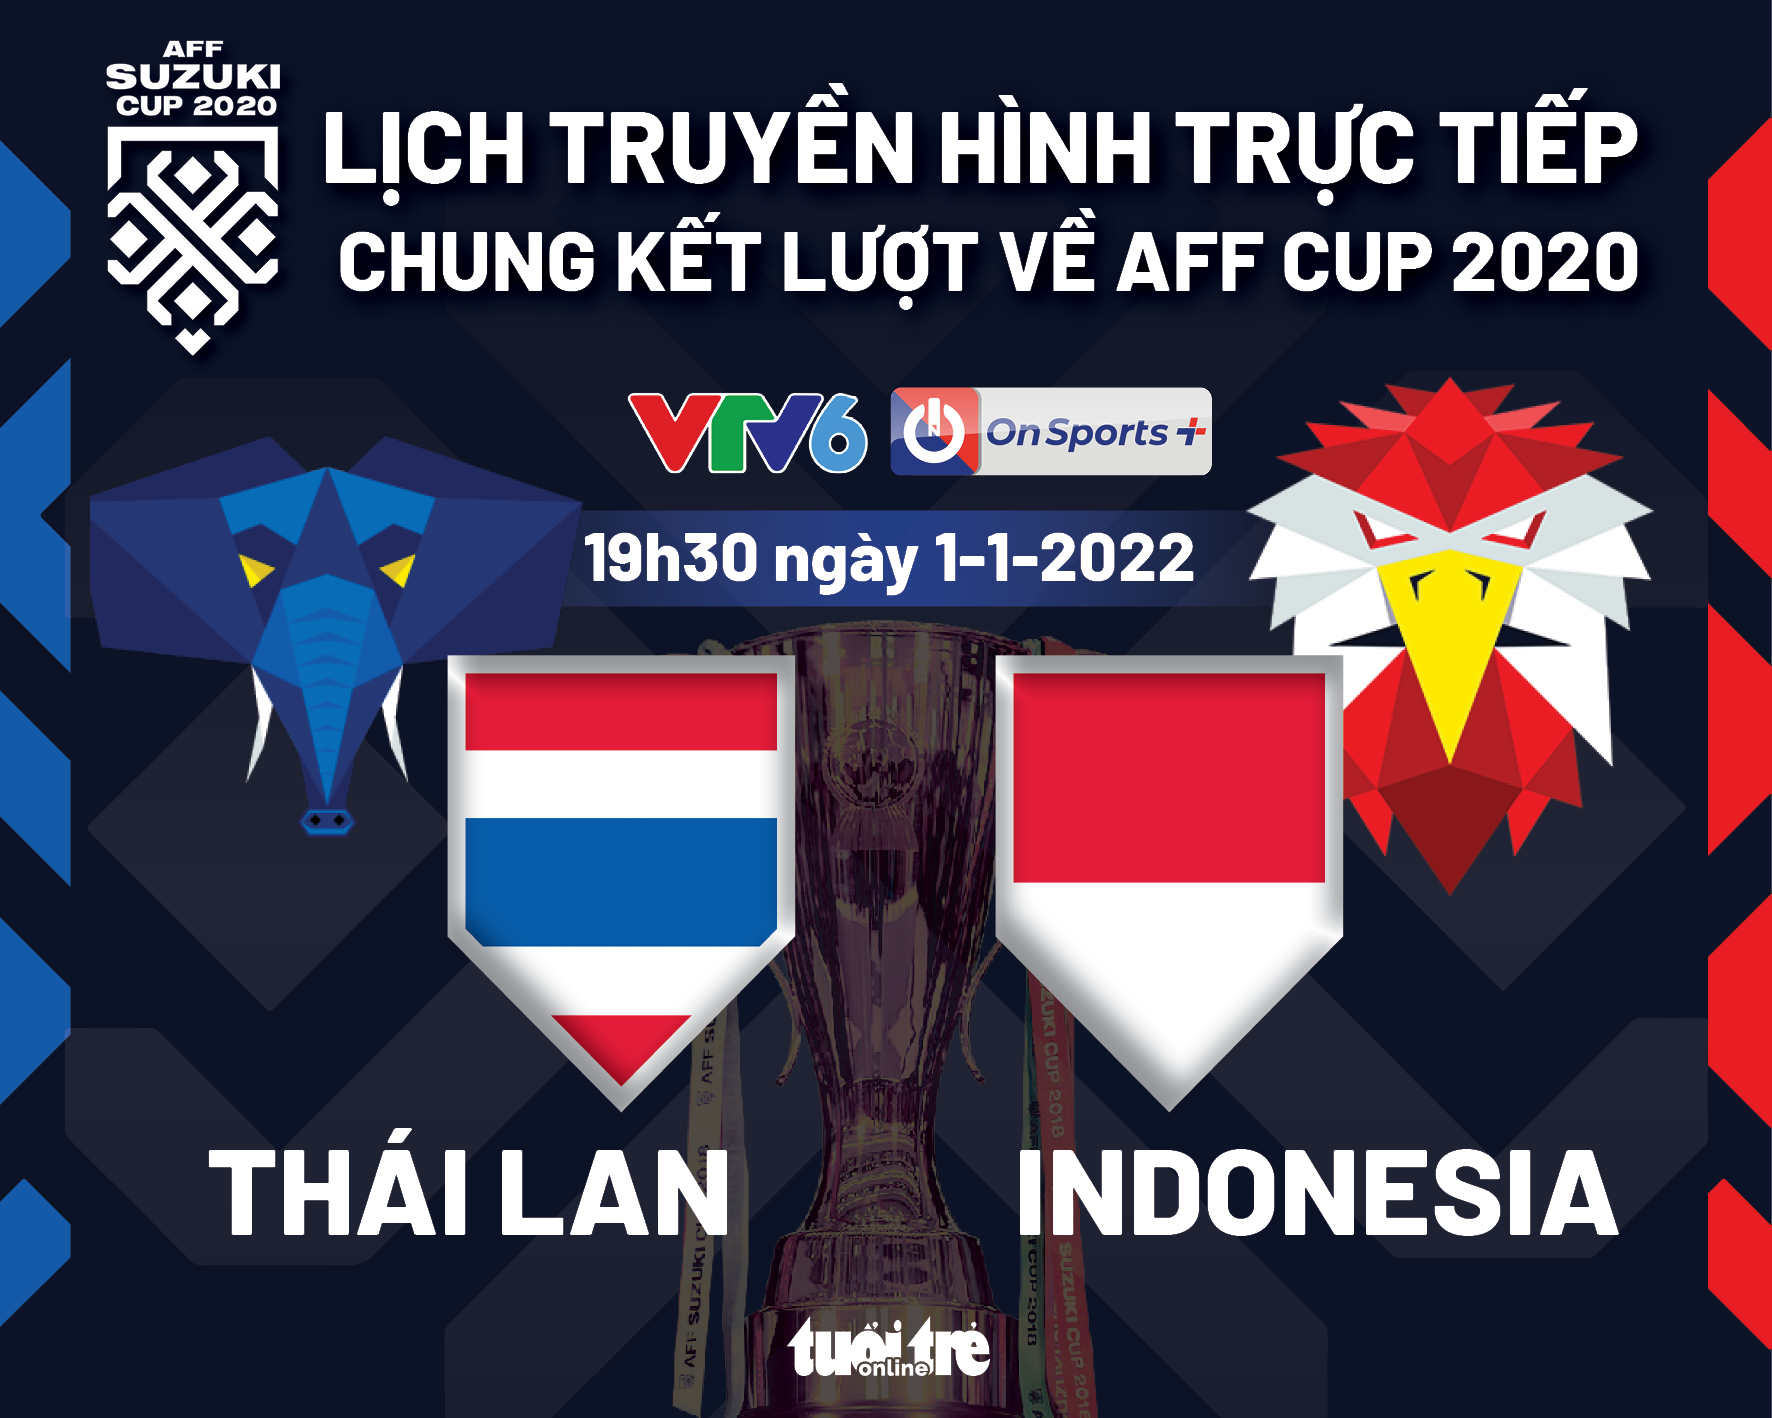 Lịch trực tiếp chung kết lượt về AFF Cup 2020: Thái Lan - Indonesia - Ảnh 1.